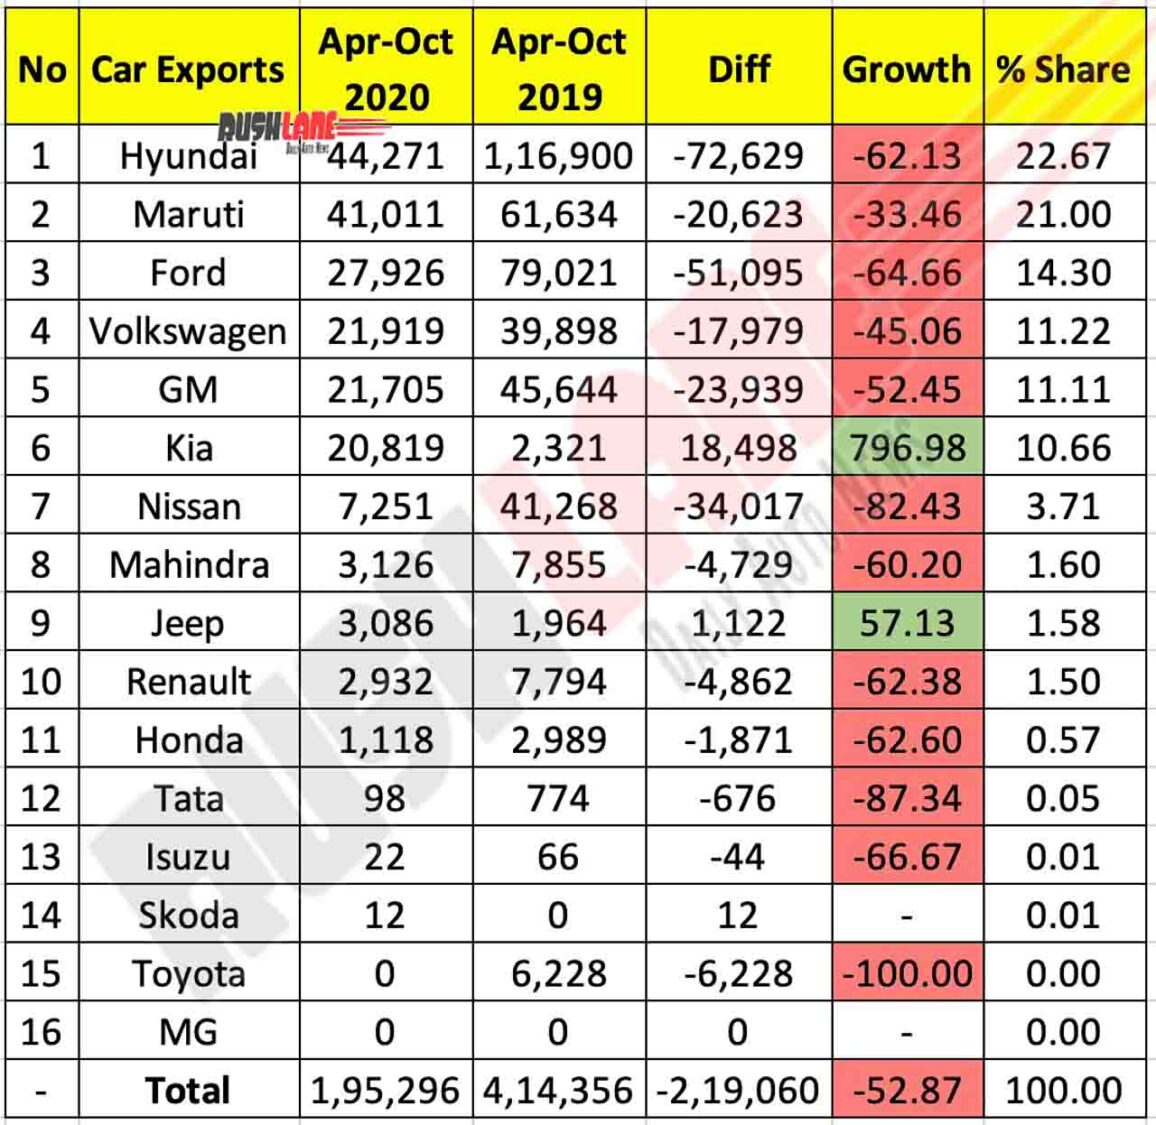 Car Exports Apr-Oct 2020